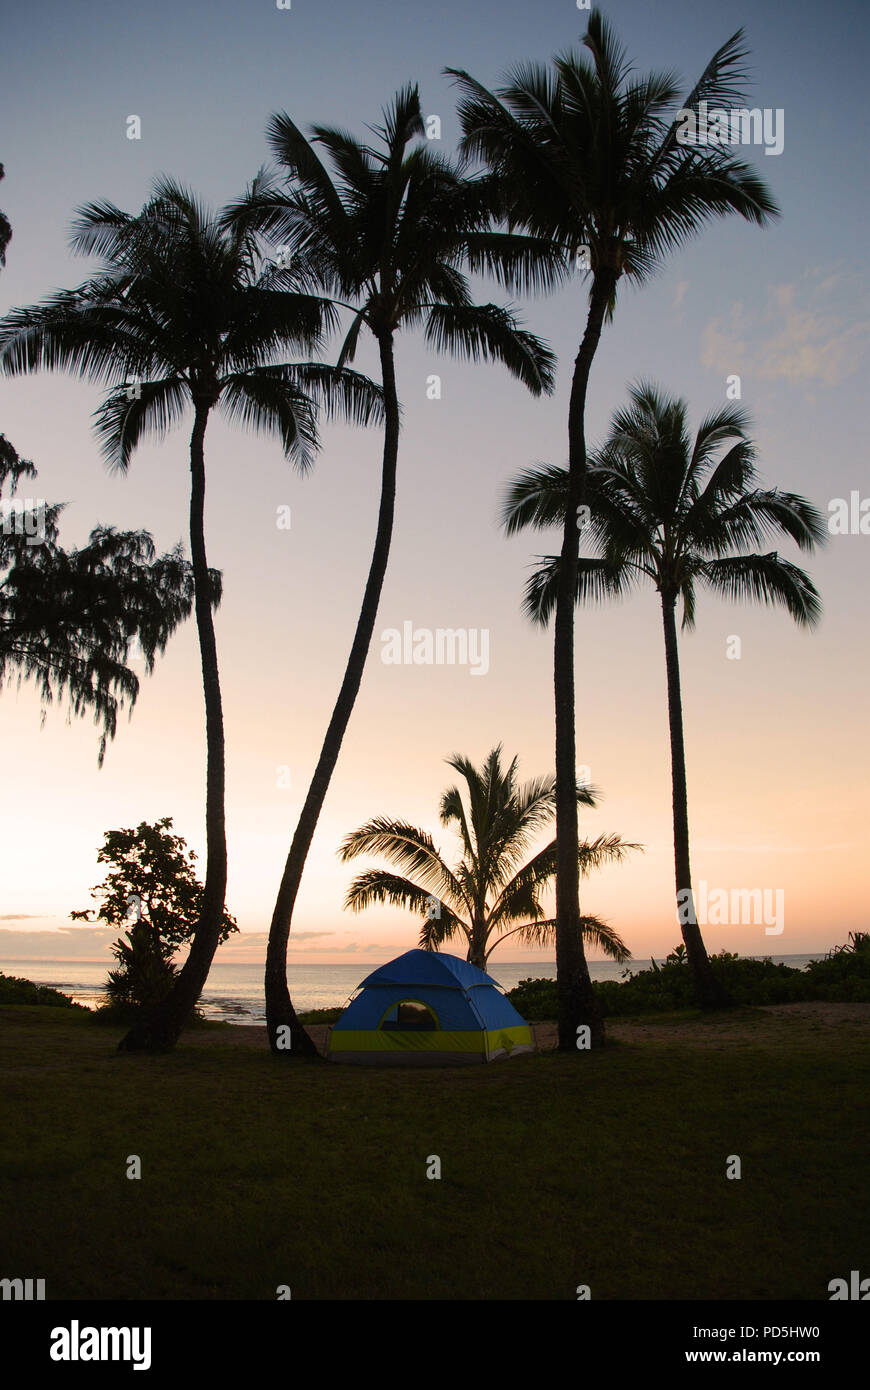 Tente de camping et de silhouettes de palmiers à l'heure du coucher du soleil à Haena Beach Park, Kauai, Hawaii, USA Banque D'Images